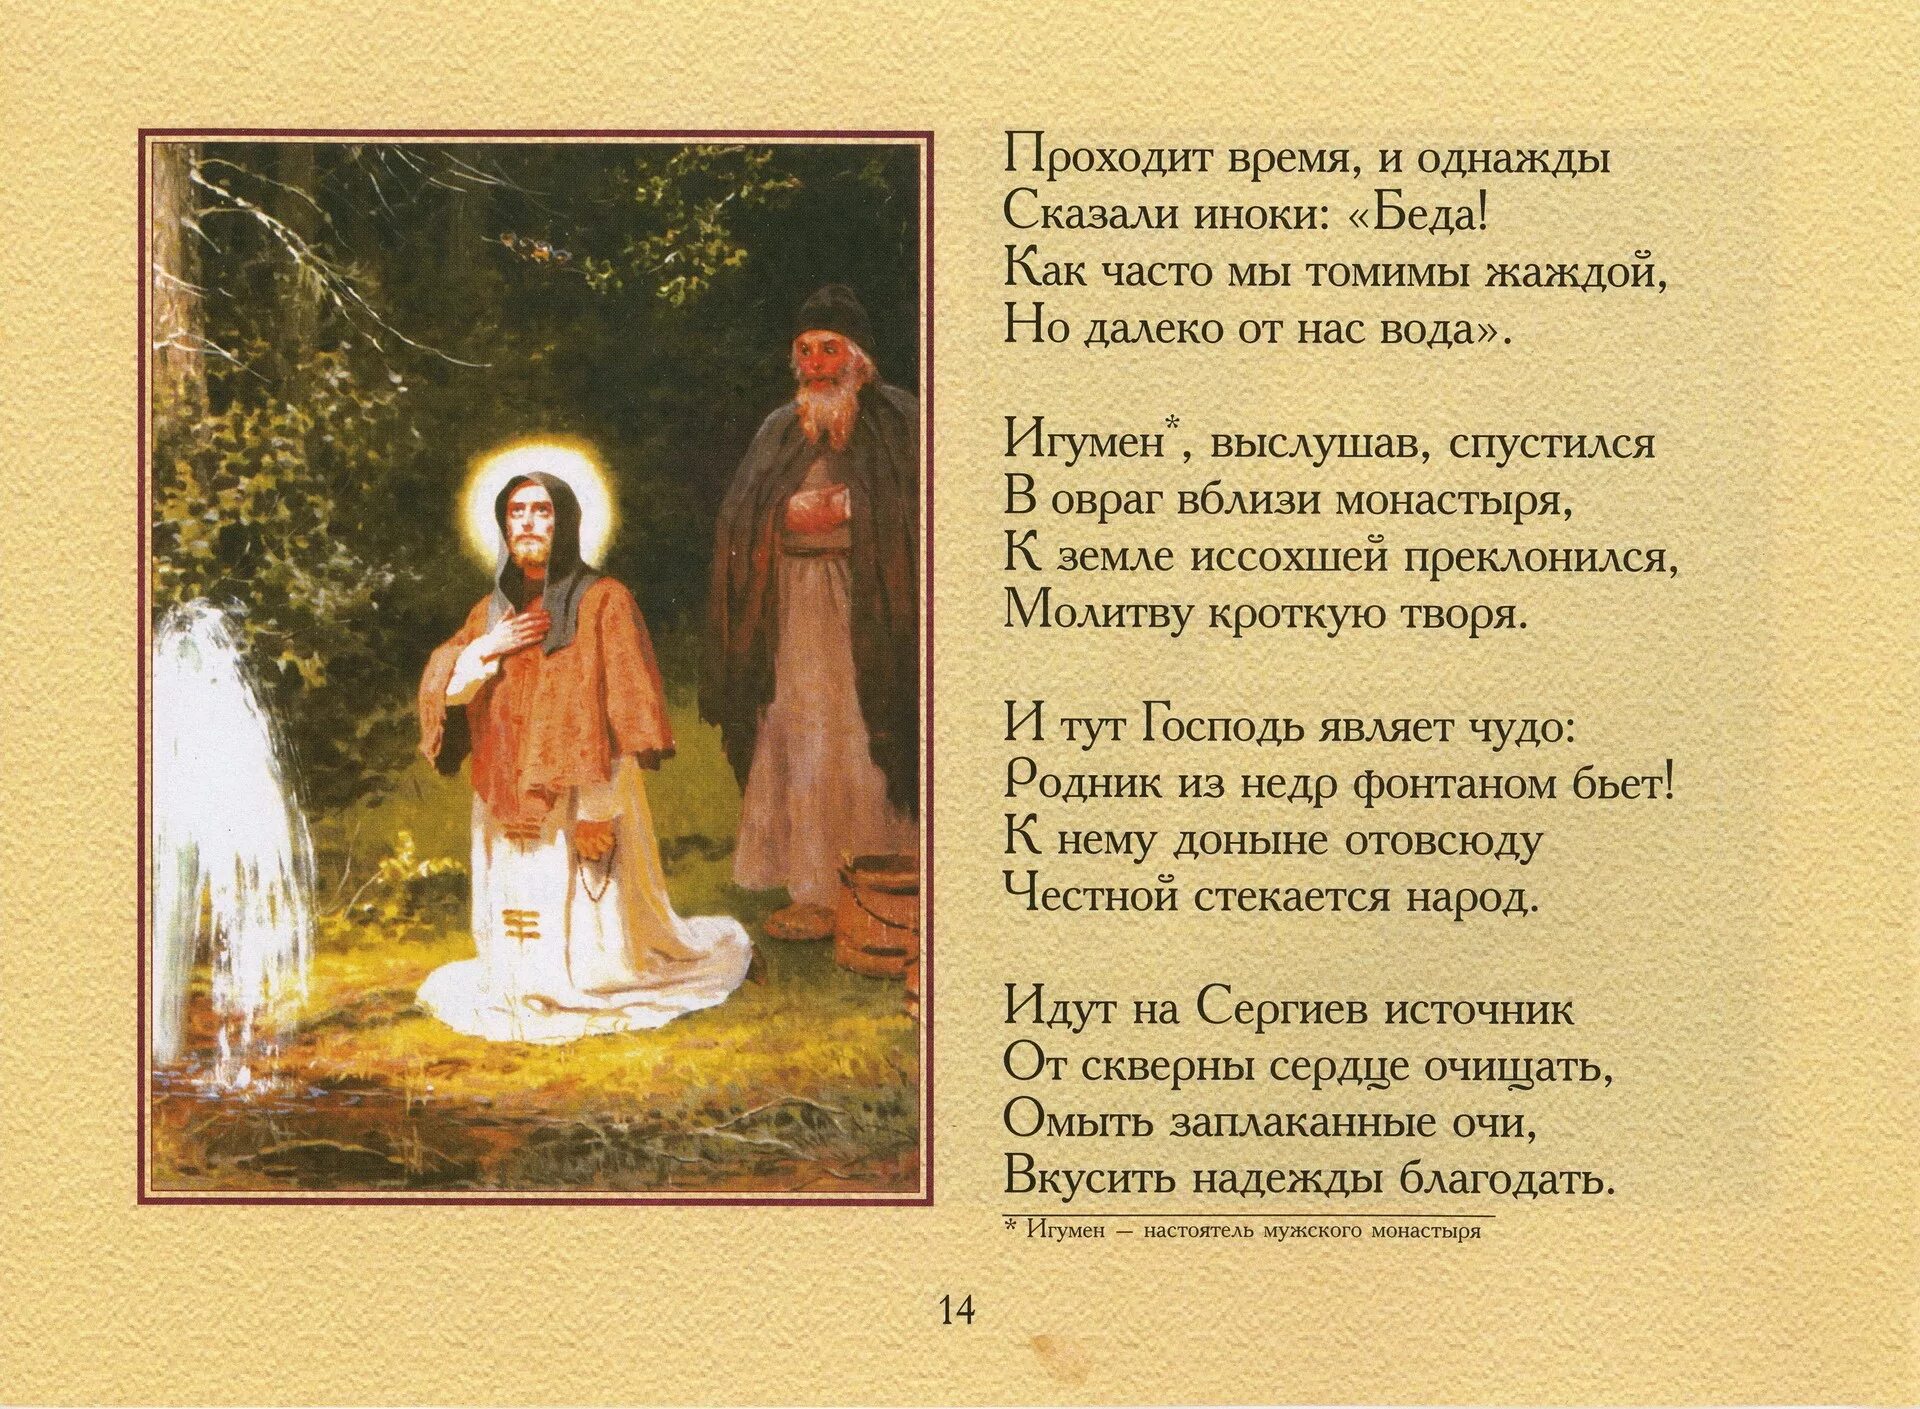 Стихотворение о приподобном Сергии Радонежском.